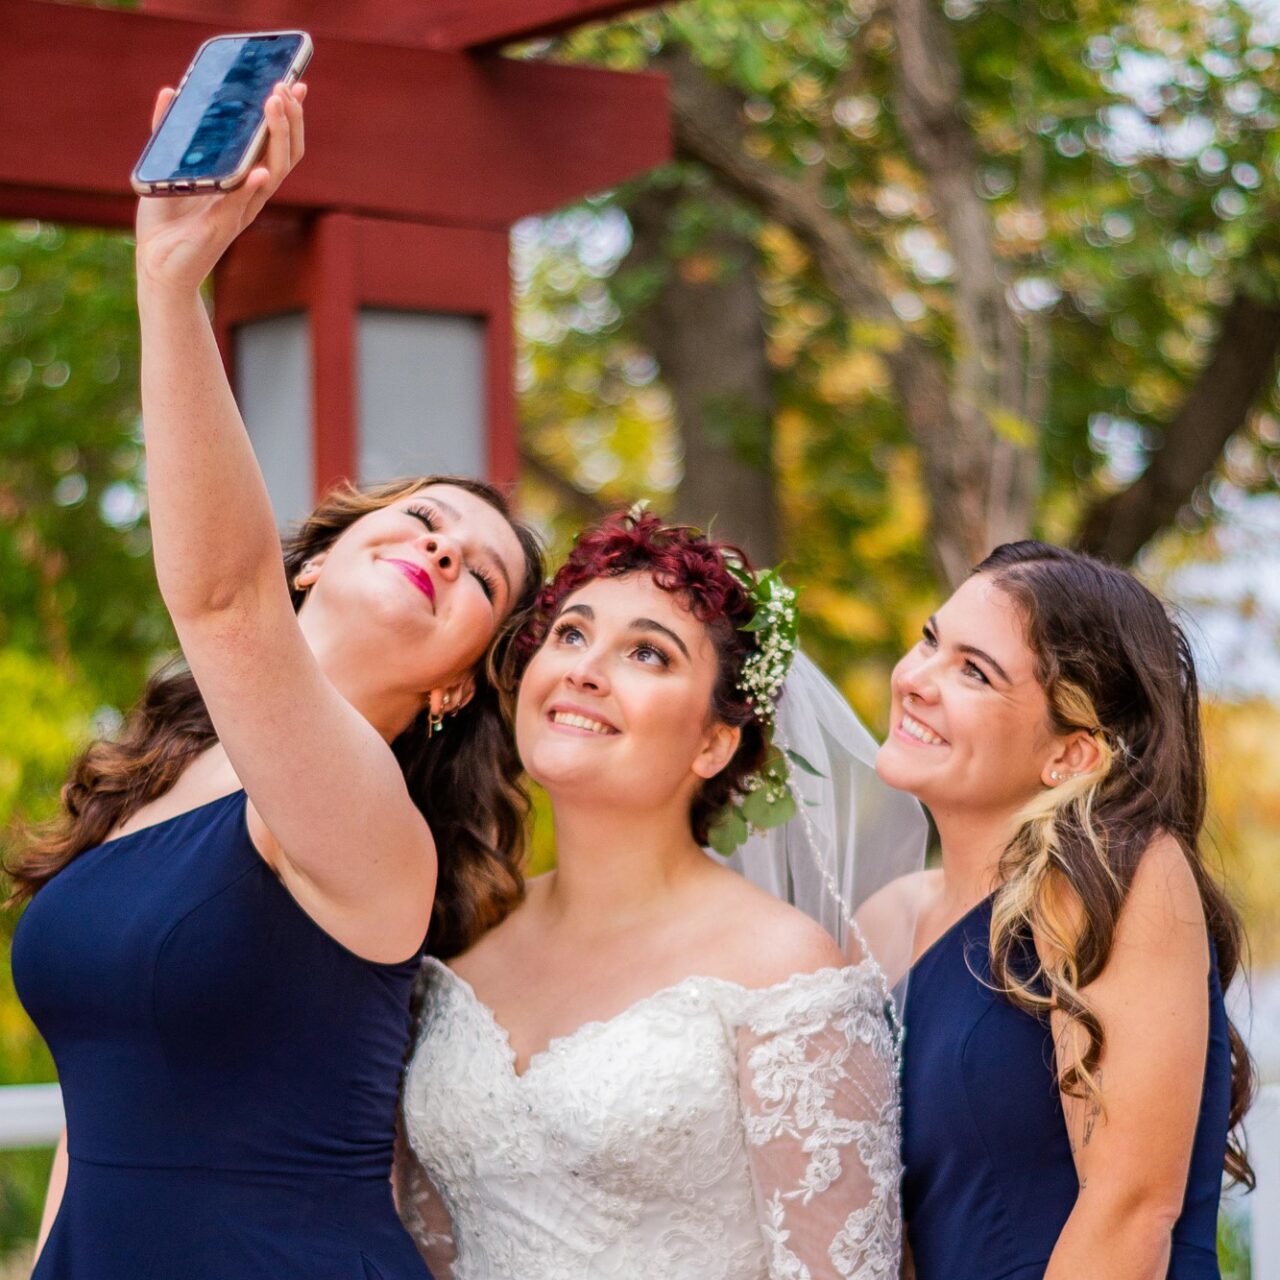 6 Unique Ways to Utilize Social Media at Your Wedding